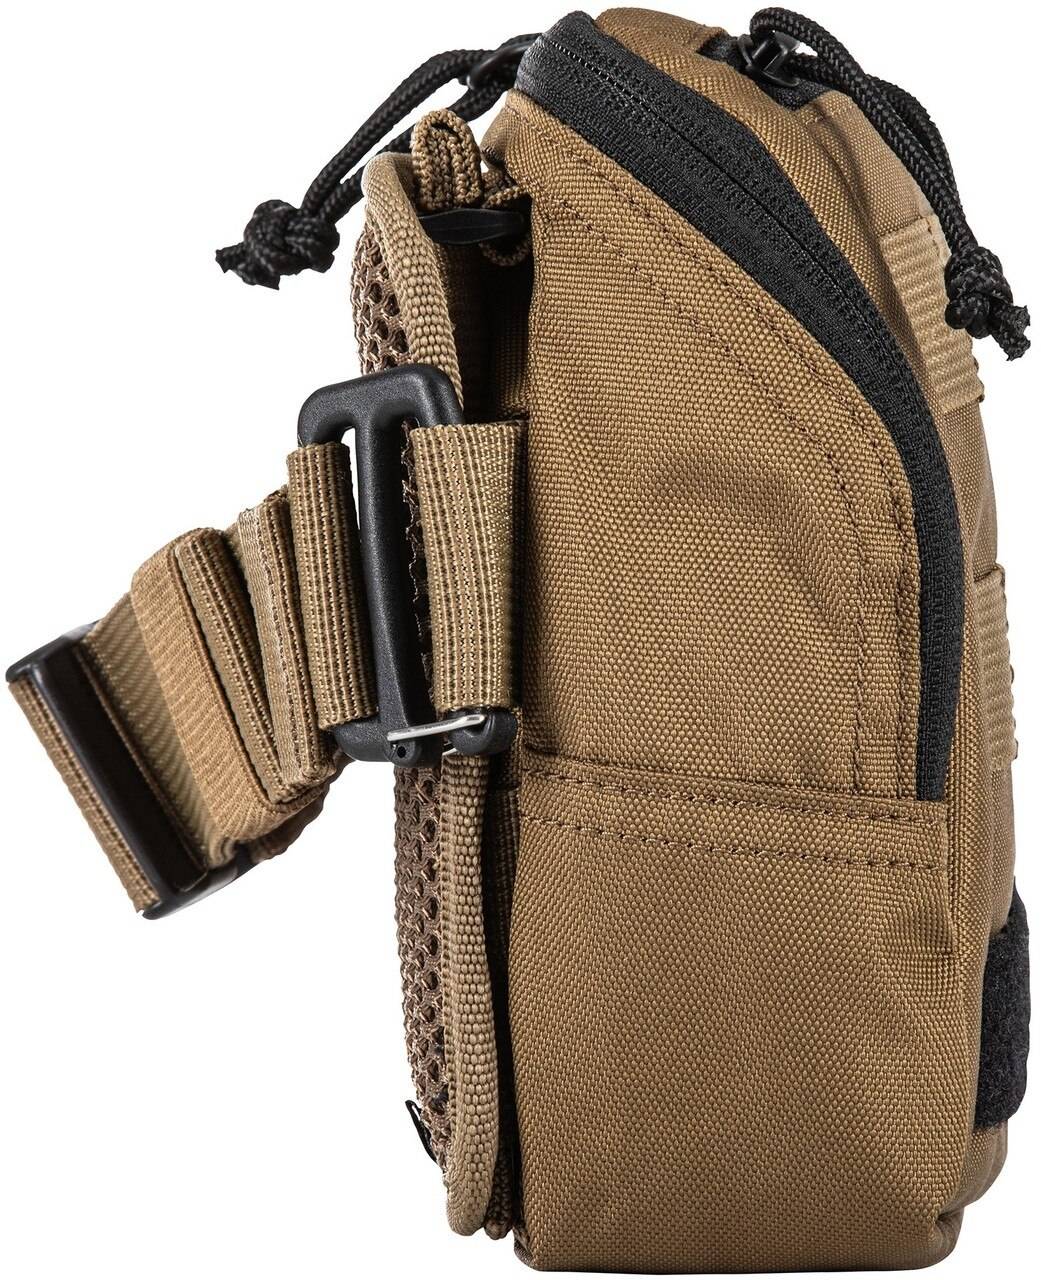 5.11 Tactical 3L Rapid Waist Pack (Color: Kangaroo), Tactical Gear